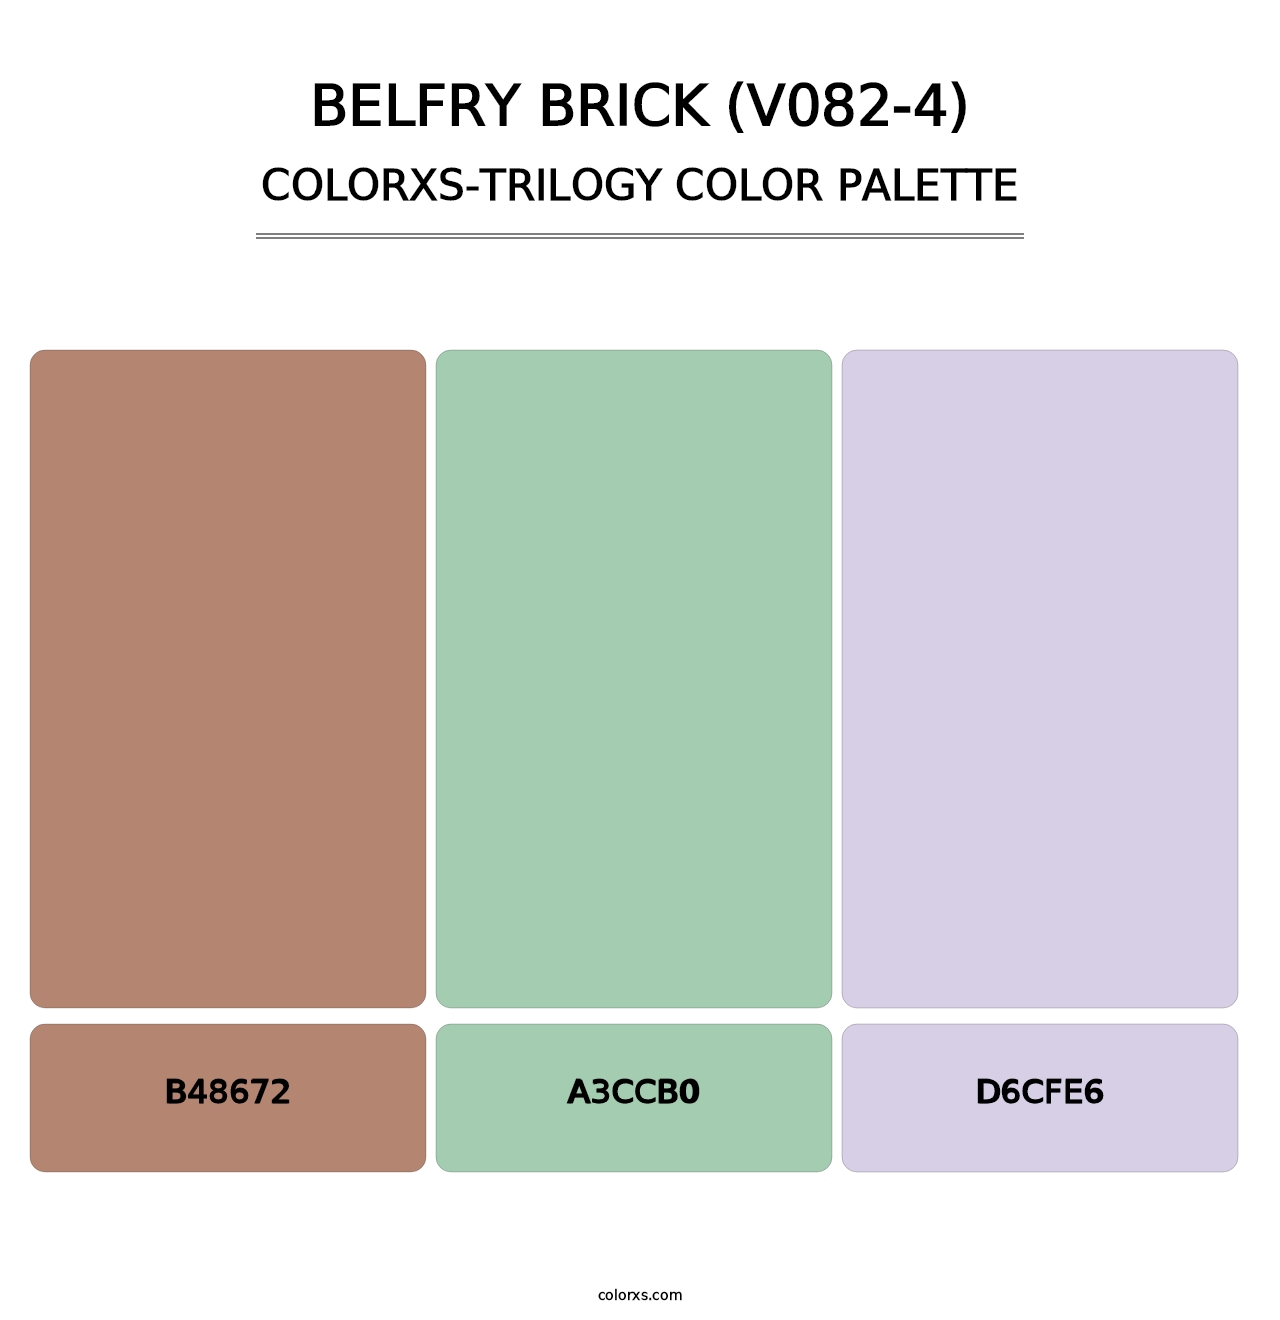 Belfry Brick (V082-4) - Colorxs Trilogy Palette